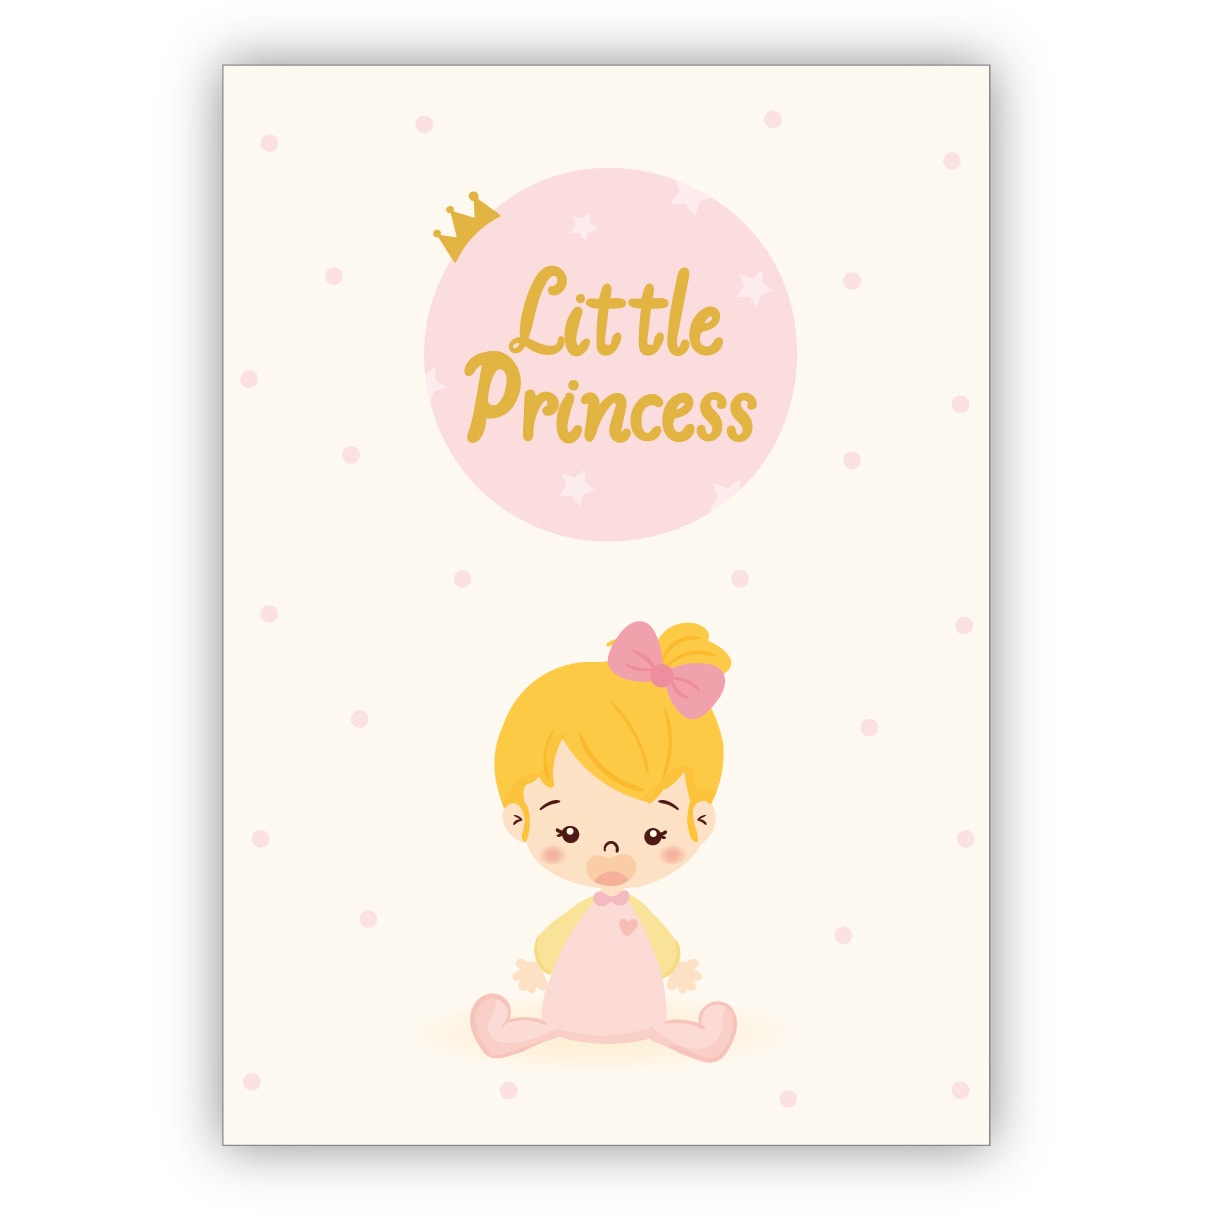 Süße Glückwunschkarte zur Geburt eines Mädchen mit kleinem Baby Girl: Little princess